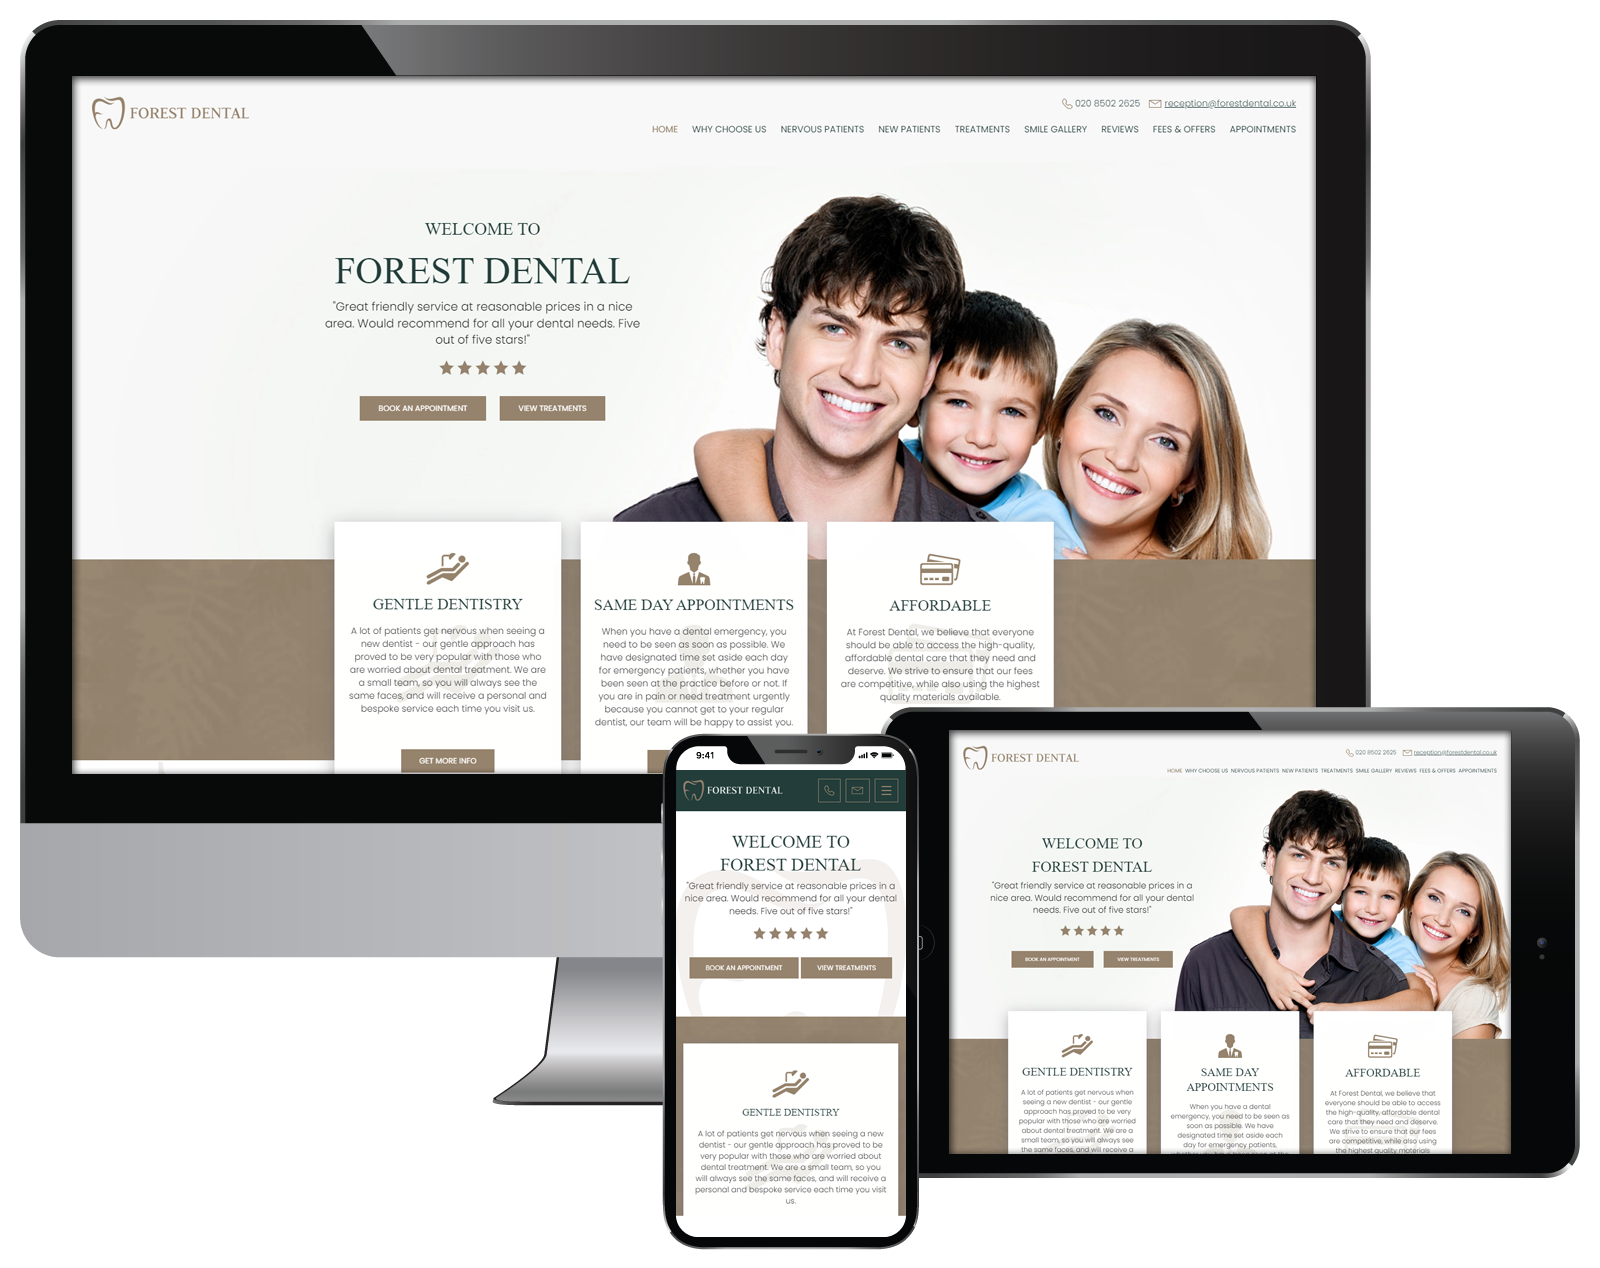 Forest Dental